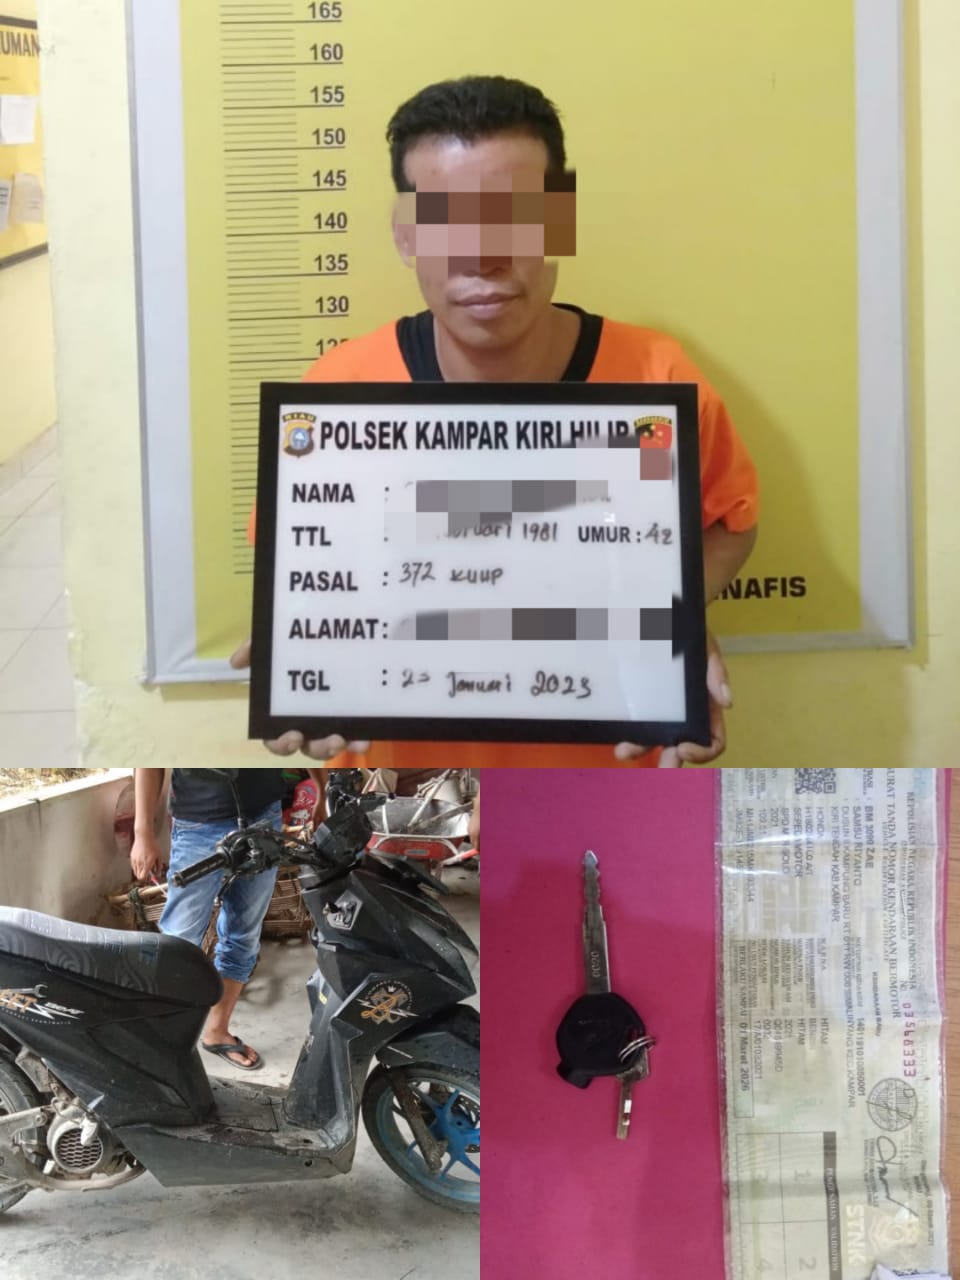 Selain DPO Kasus Narkoba, Pelaku Juga Terlibat Penggelapan Sepeda Motor